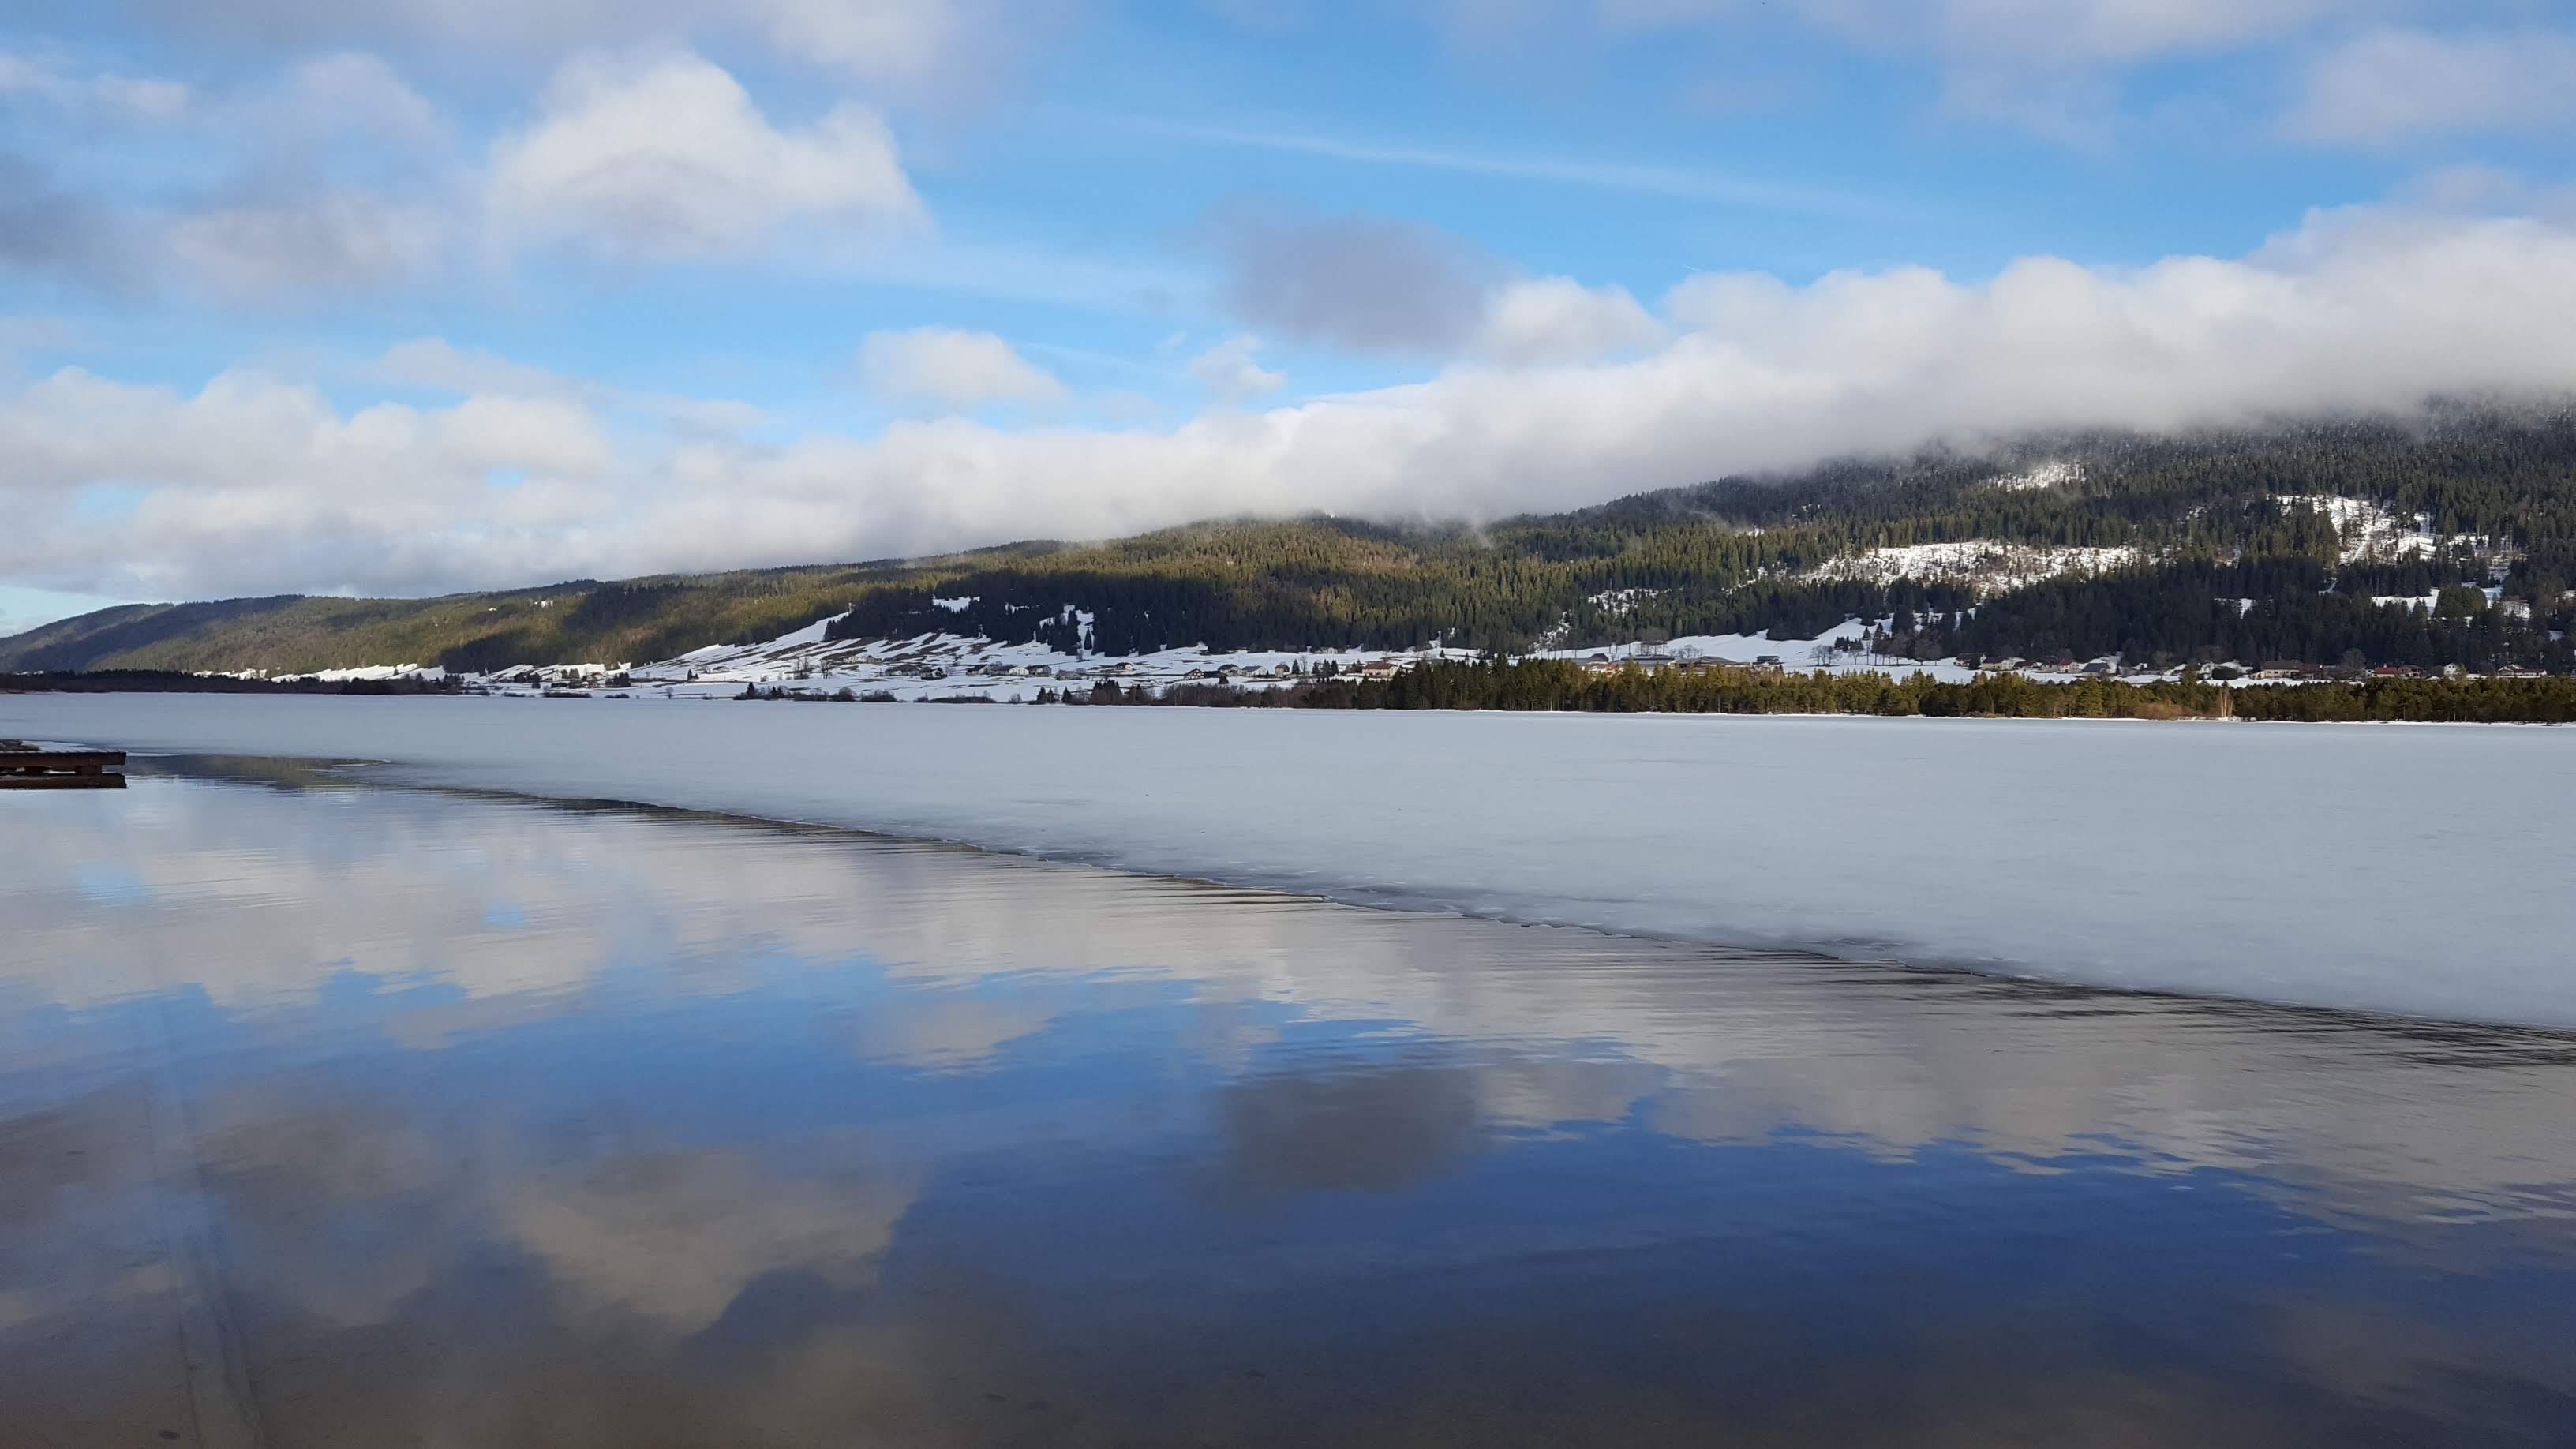  5 bonnes raisons de tester la Grande Traversée du Jura/aufildeslieux.fr/ Le lac des Rousses©K.Hibbs 